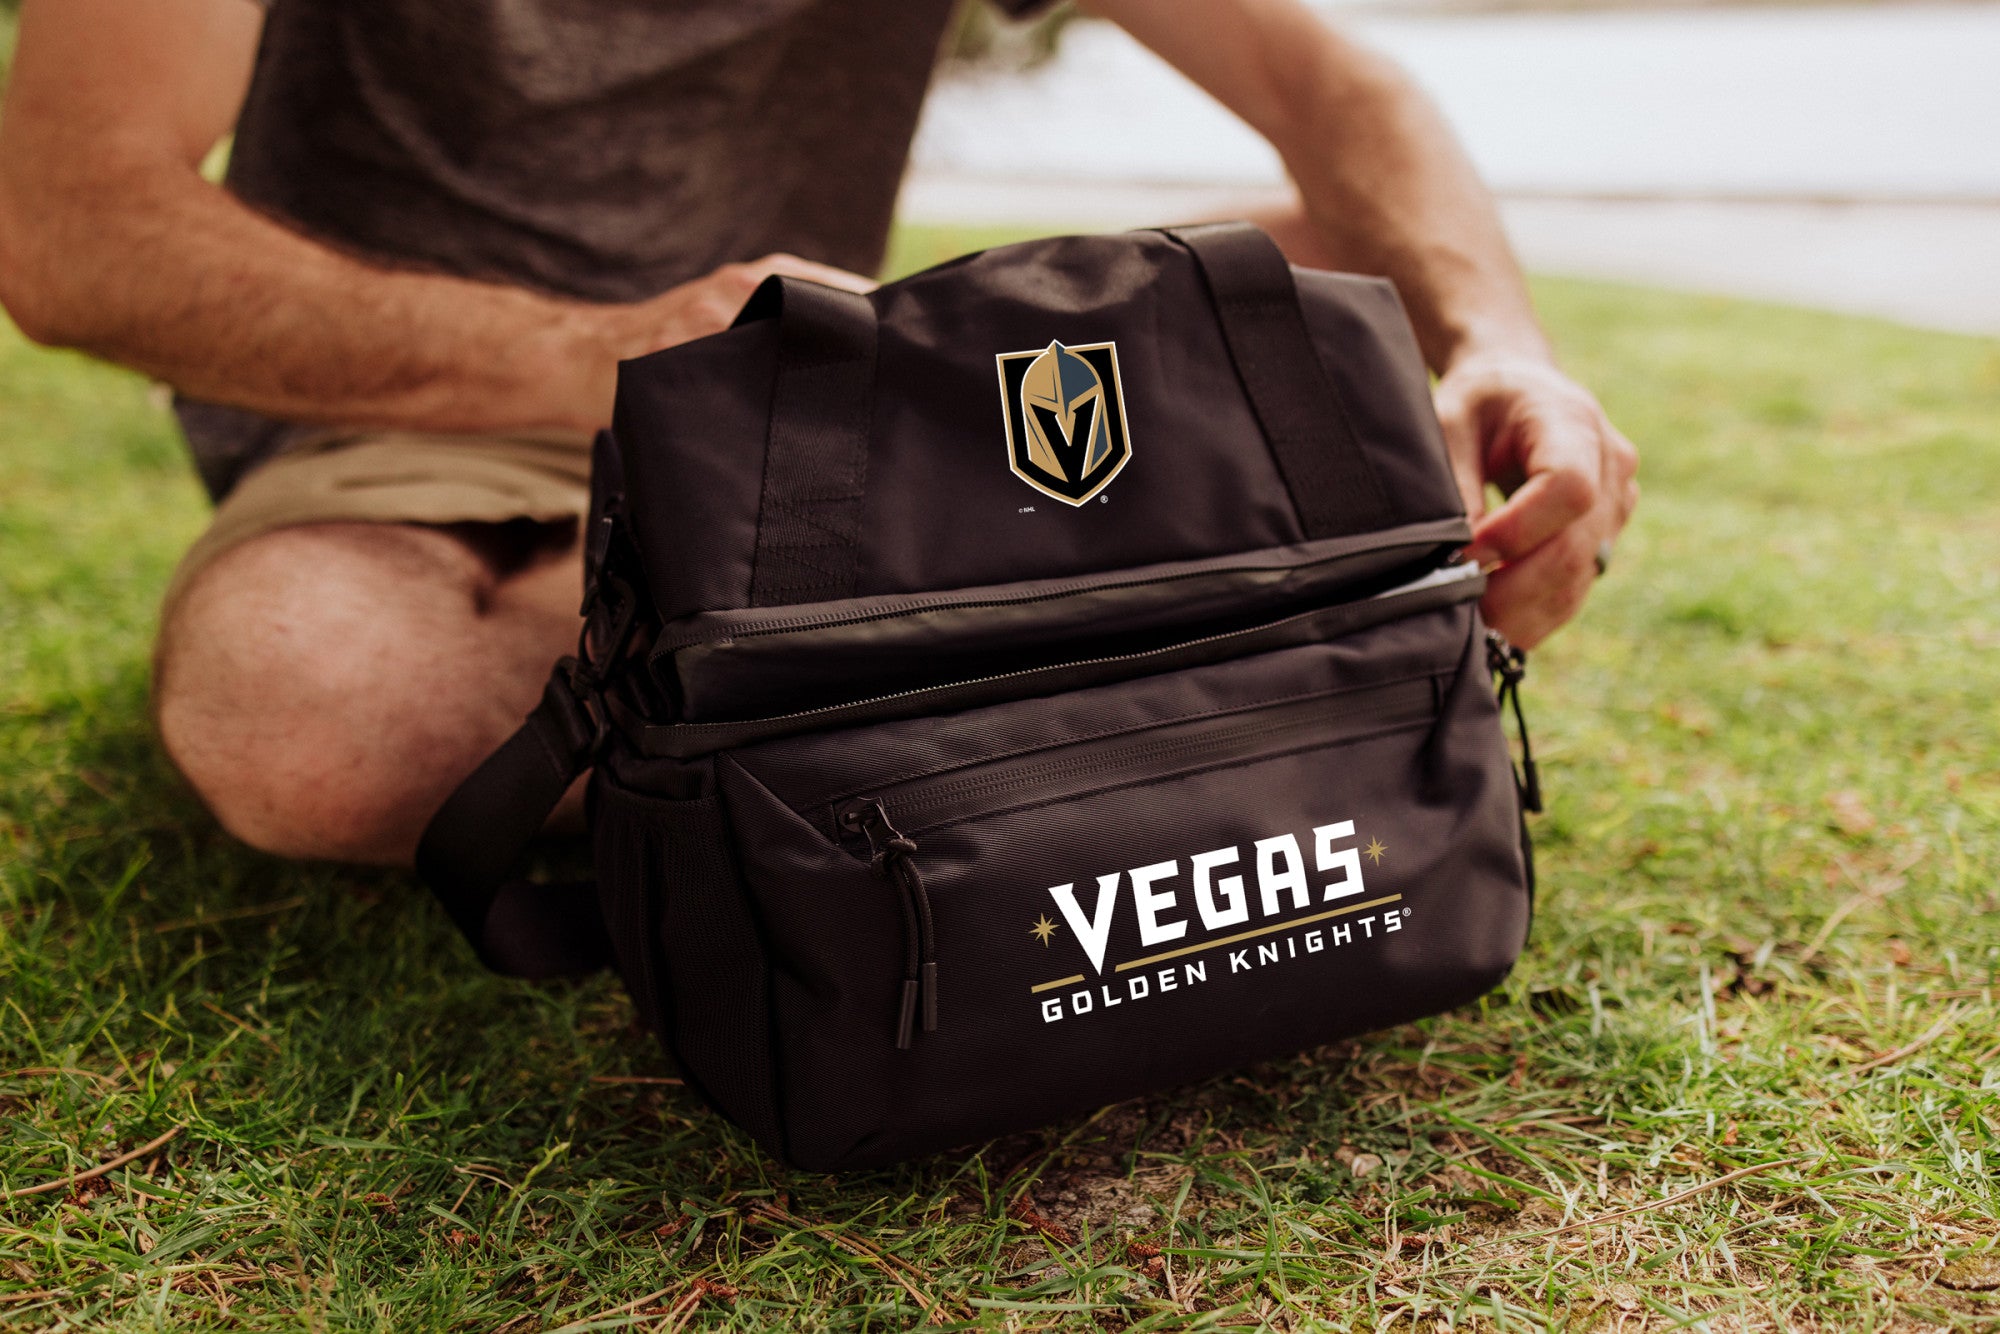 Vegas Golden Knights - Tarana Lunch Bag Cooler with Utensils